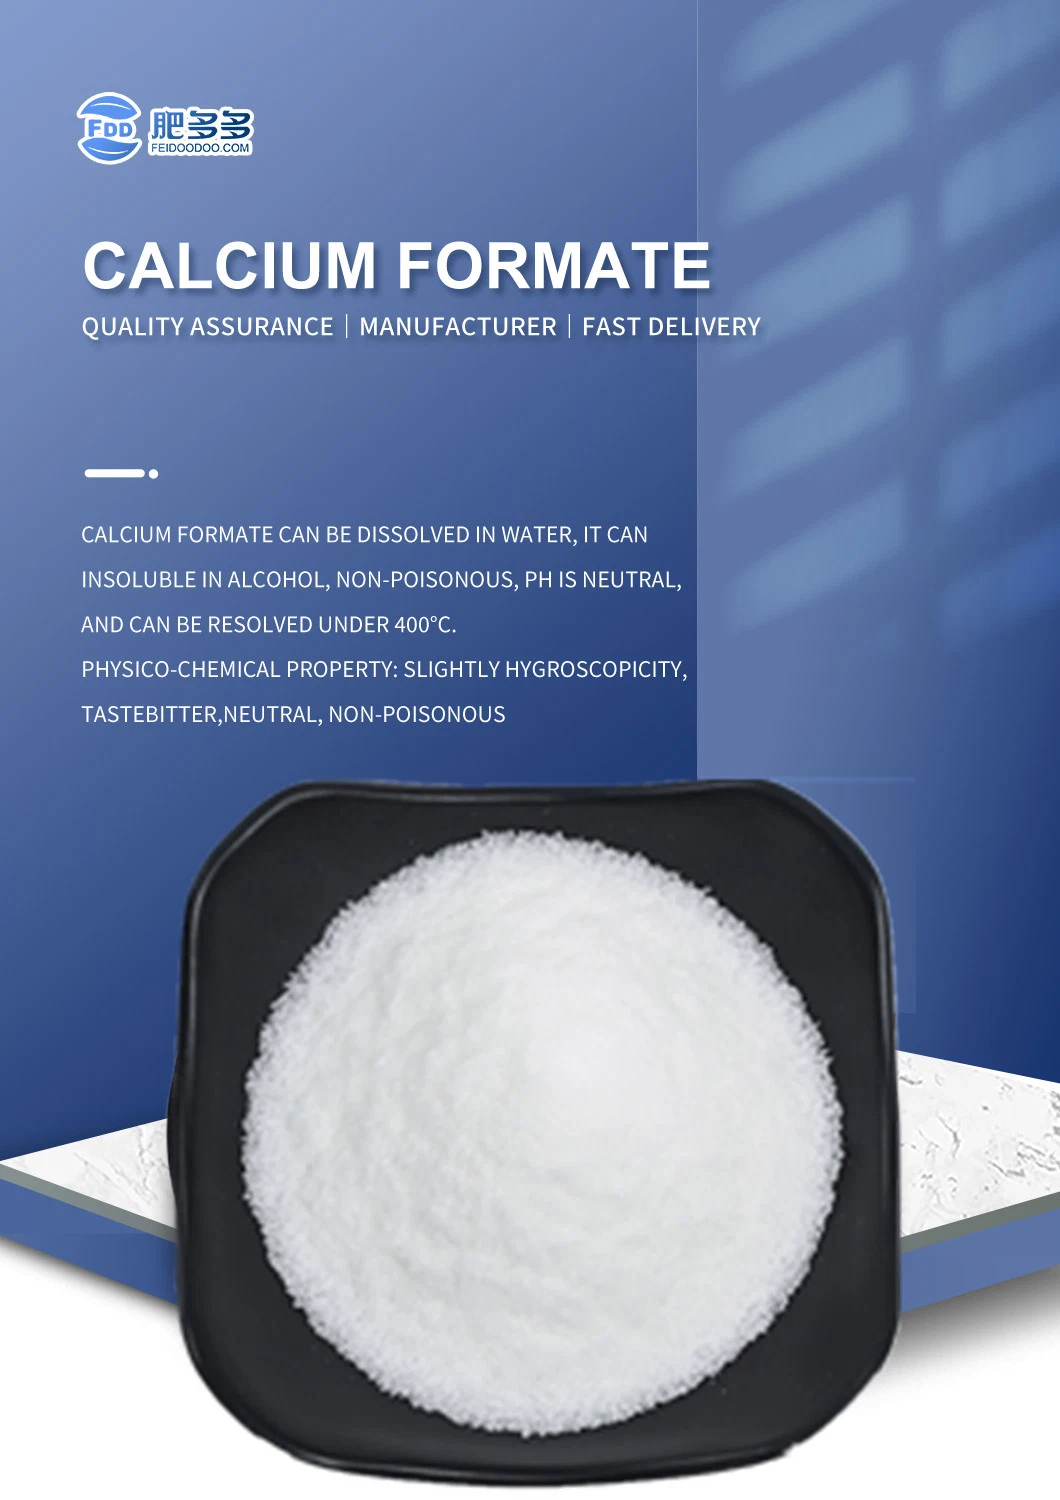 CAS 544-17-2 Industrial Feed Grade Calcium Formate